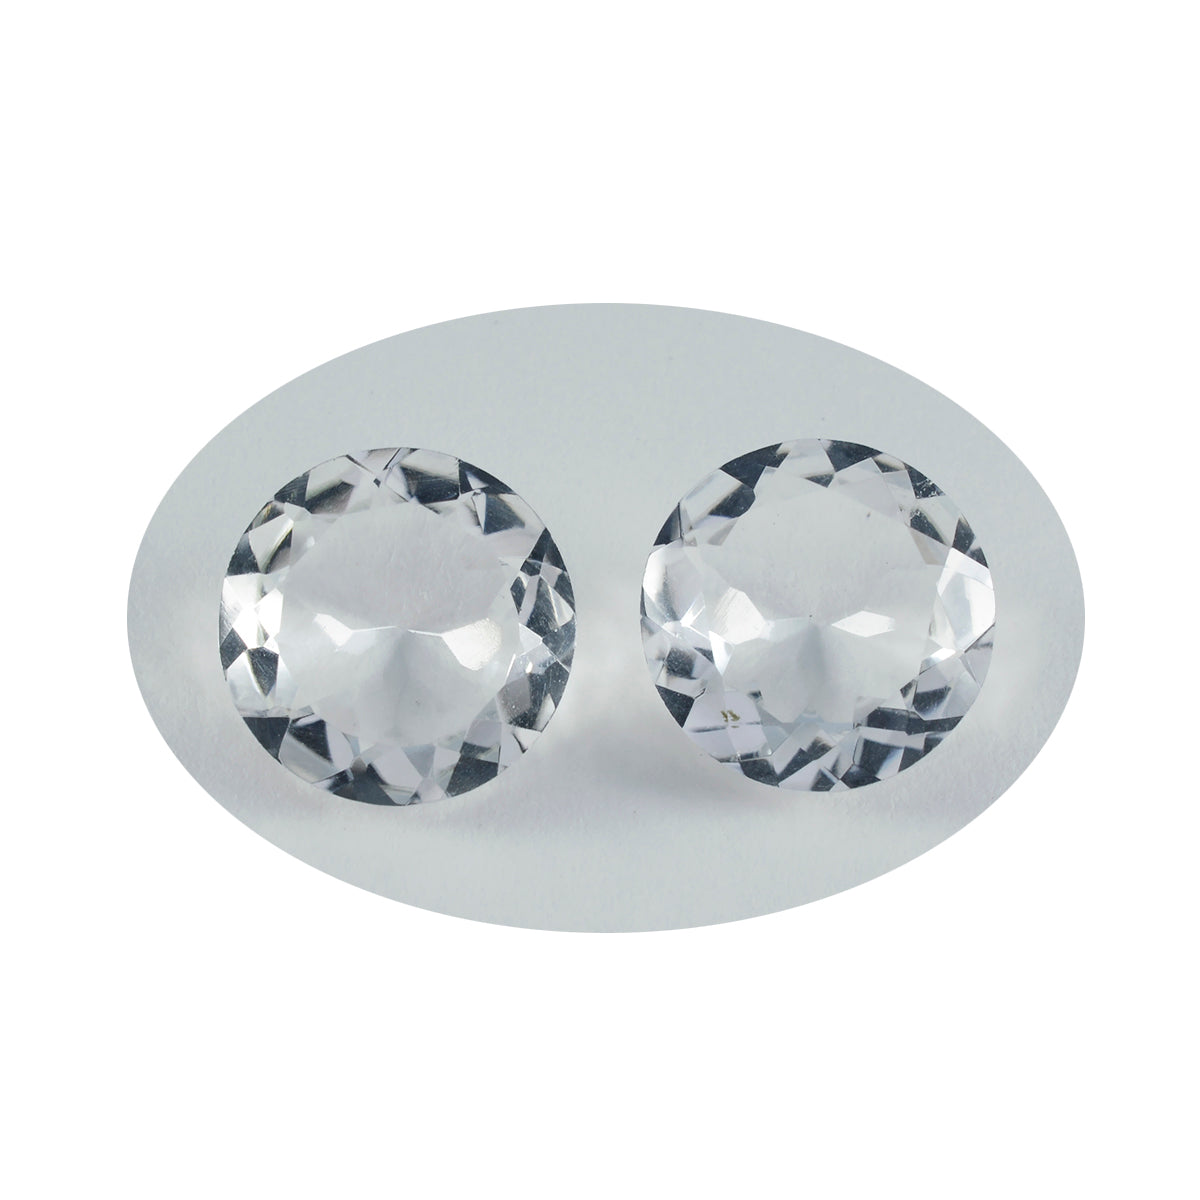 Riyogems 1 Stück weißer Kristallquarz, facettiert, 15 x 15 mm, runde Form, wunderschöner Qualitätsedelstein